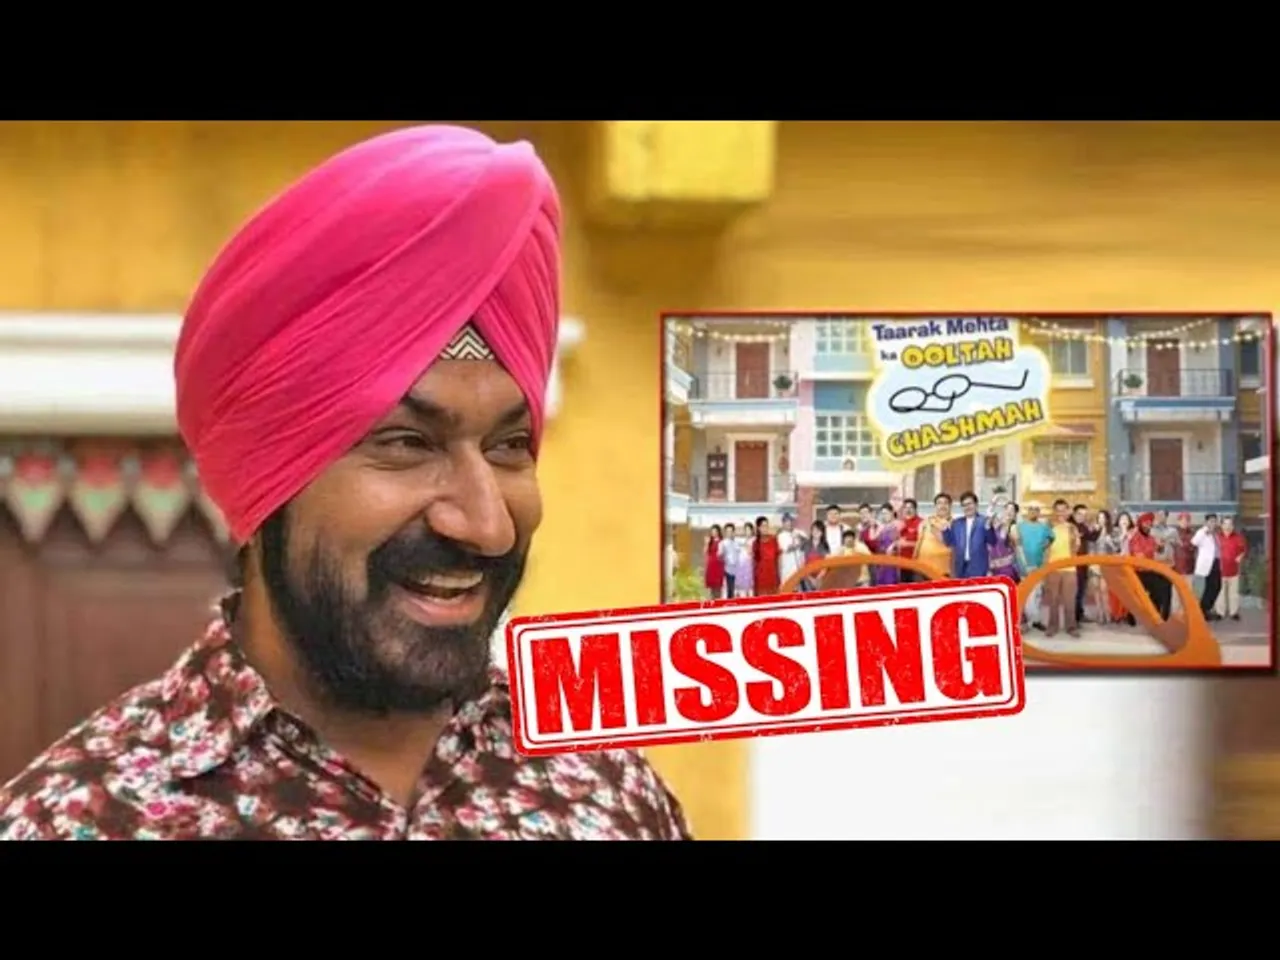 Gurucharan Singh Sodhi Goes Missing